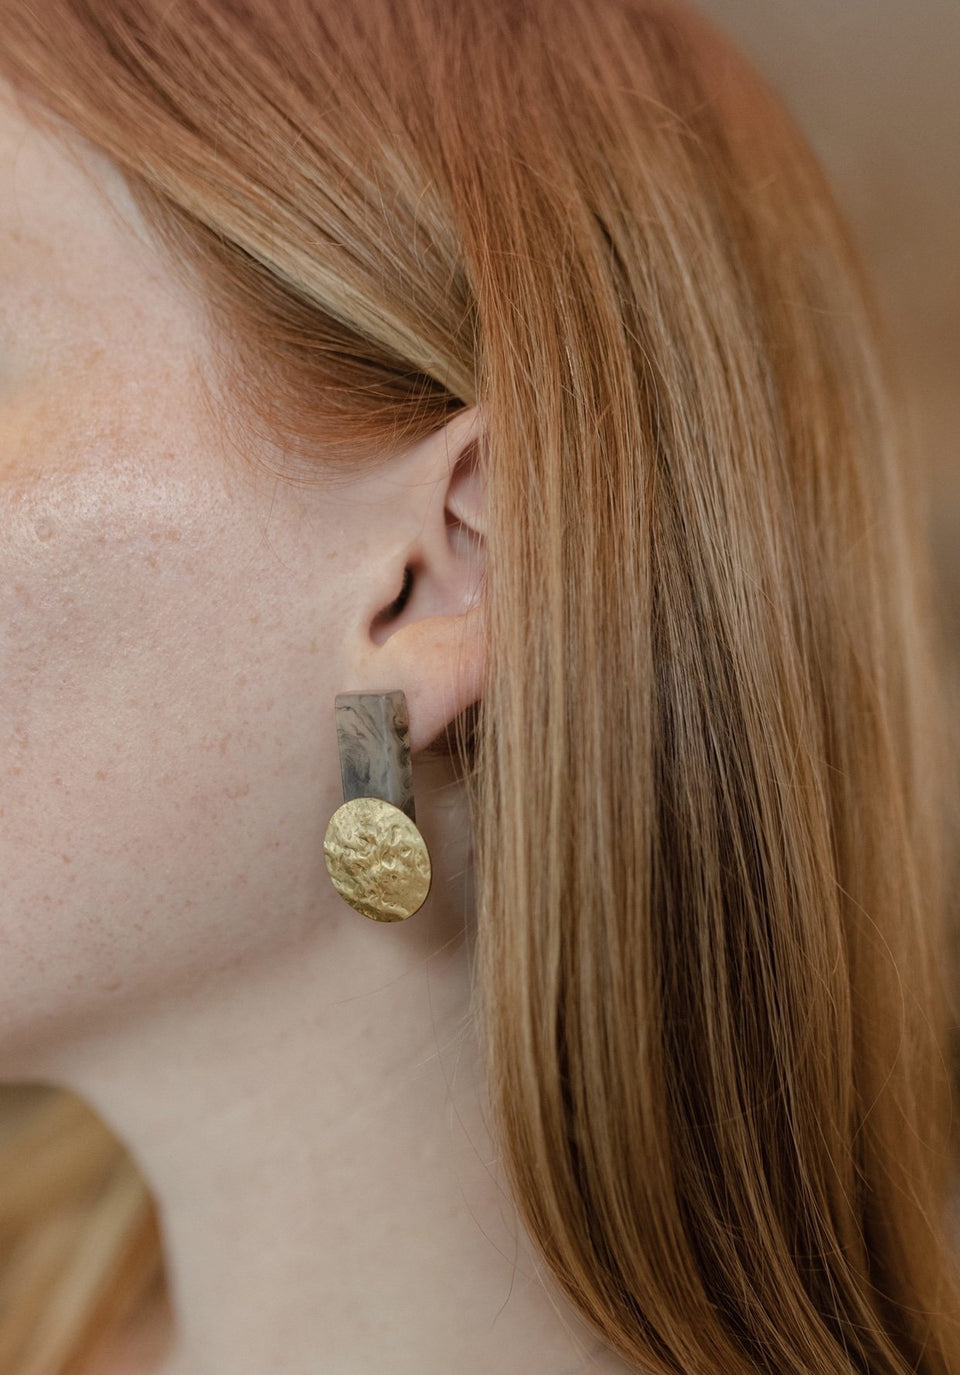 Dangle Earrings with Brass